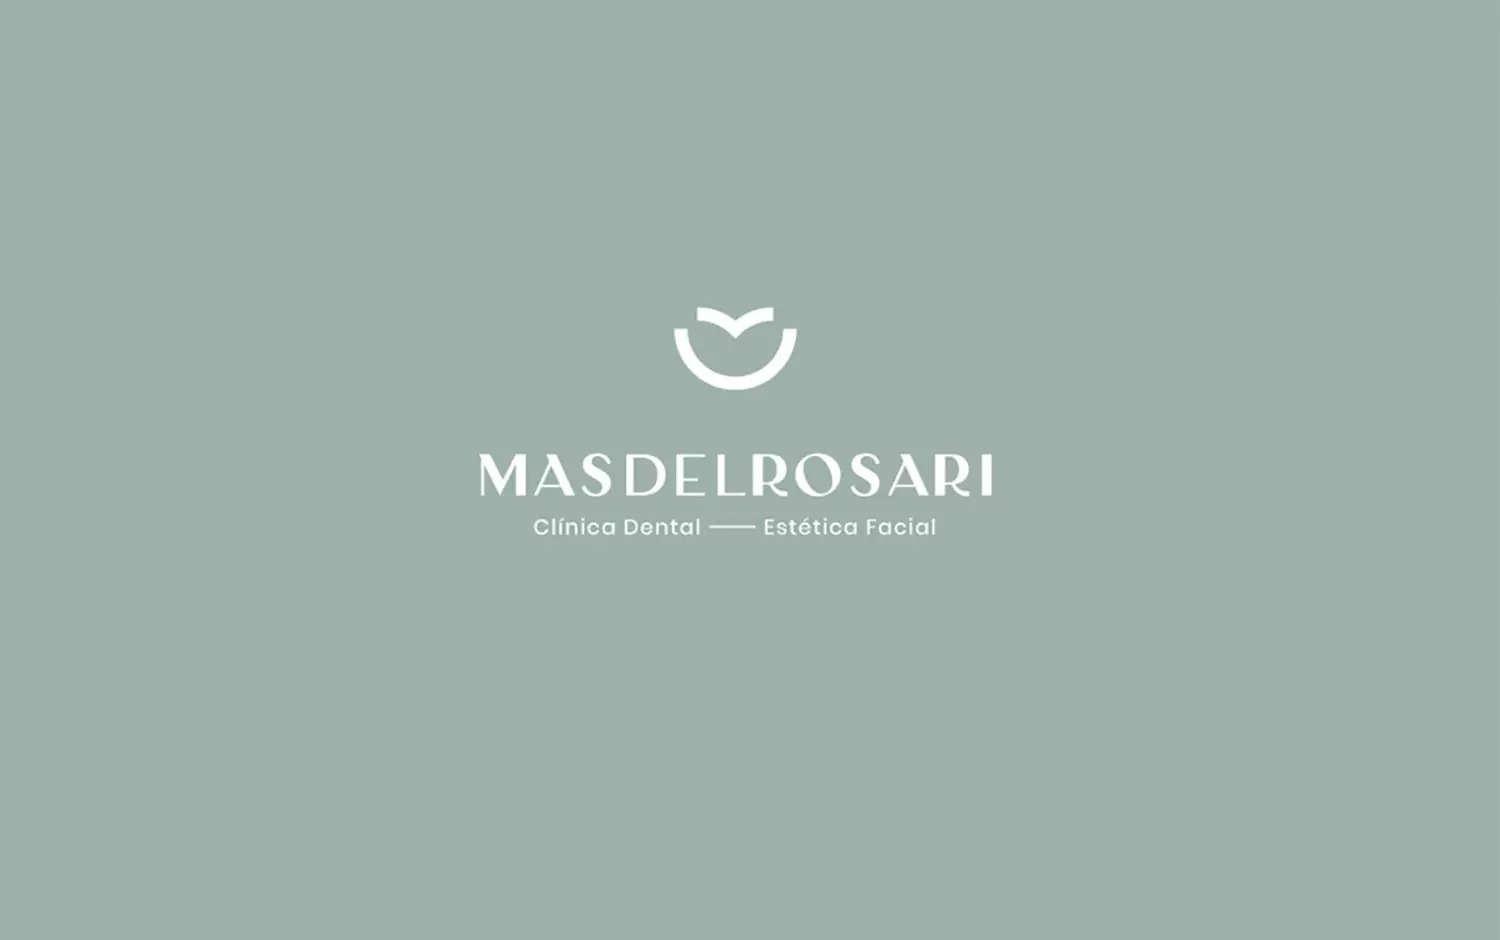 Mas del Rosari牙科诊所品牌设计